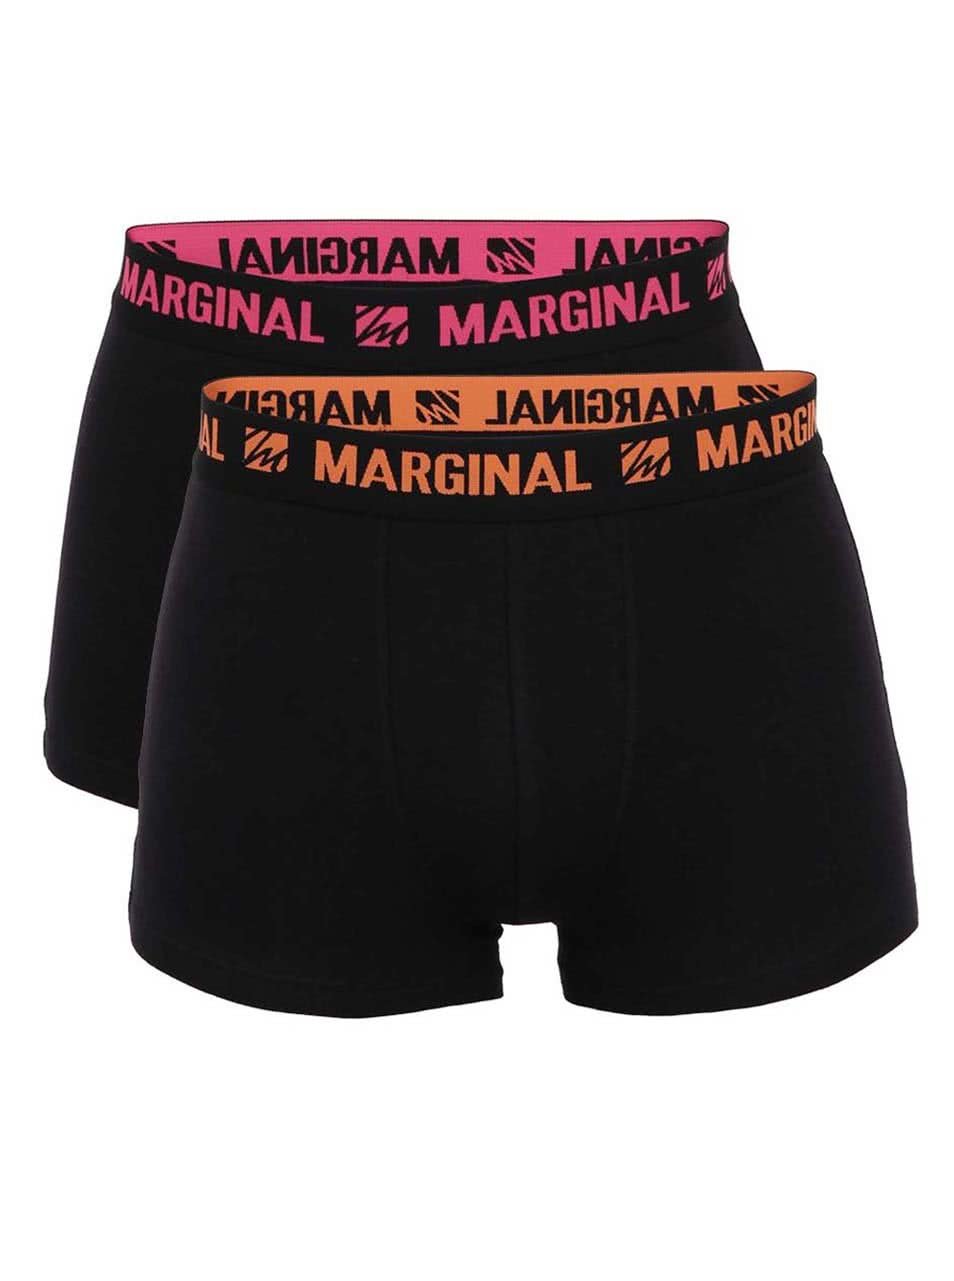 Sada dvou černých boxerek s oranžovým a růžovým nápisem Marginal